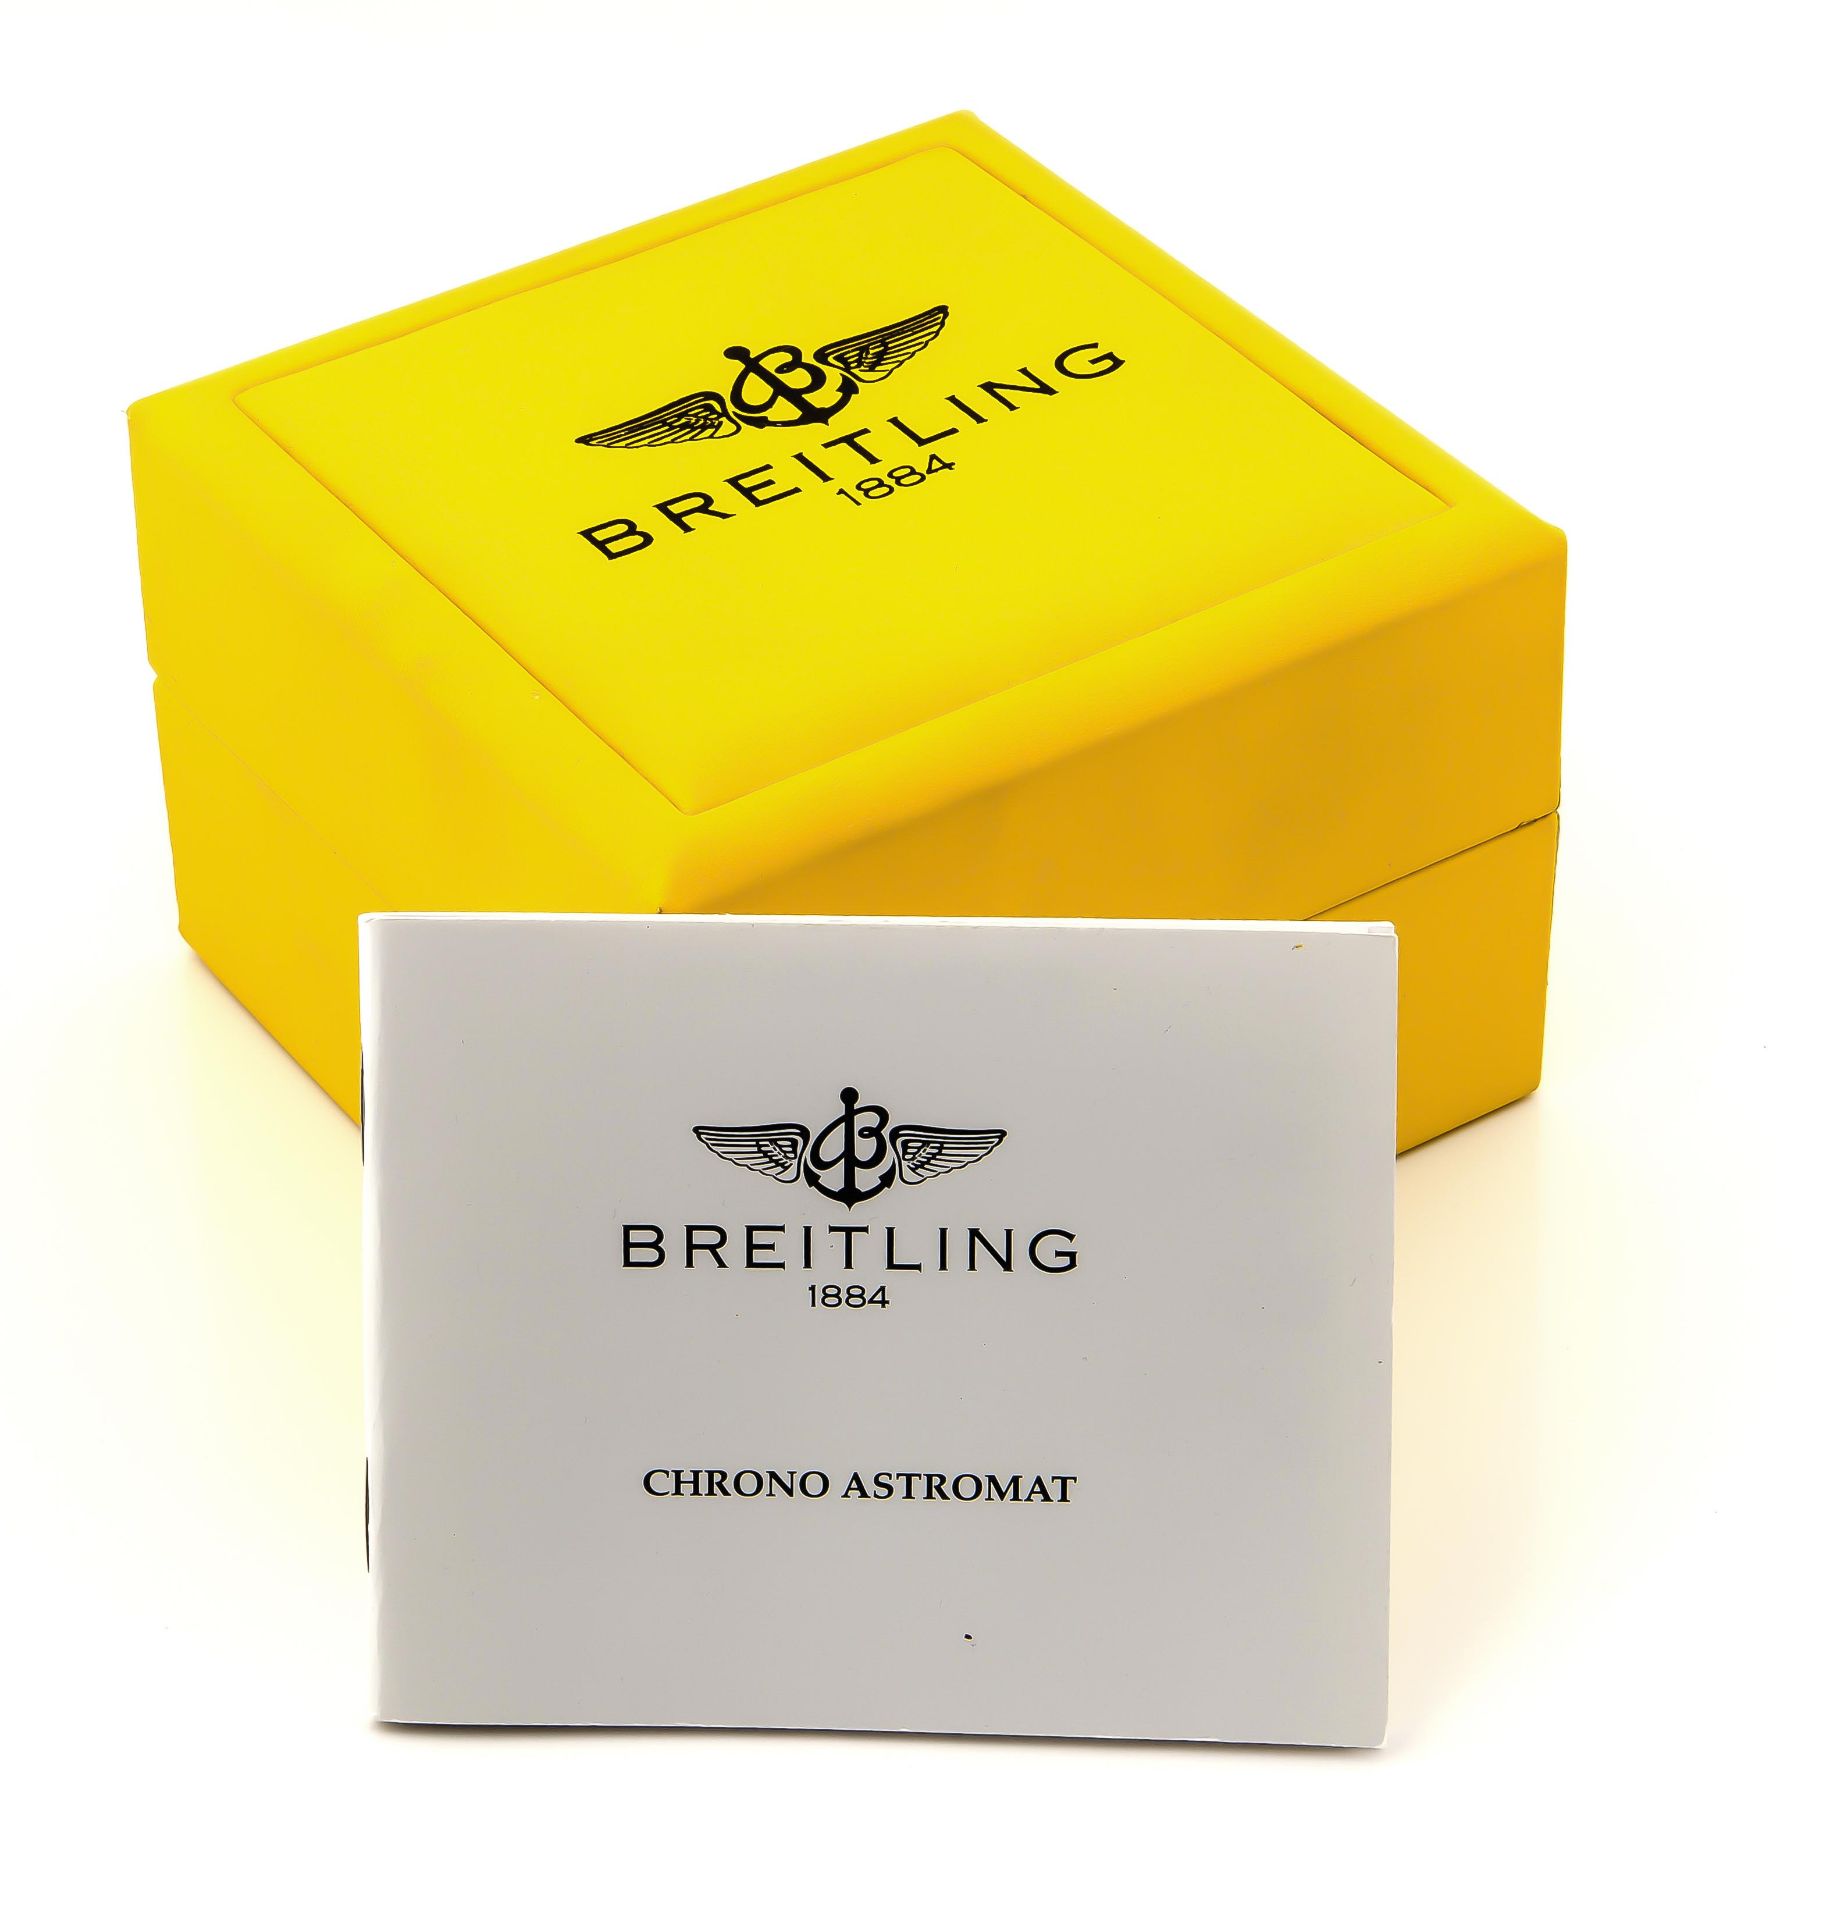 Breitling Herrenarmbanduhr Chrono-Astromat Longitude Stahl/Gold 750/000 Automatik mitDatum, Sekunde, - Image 5 of 6